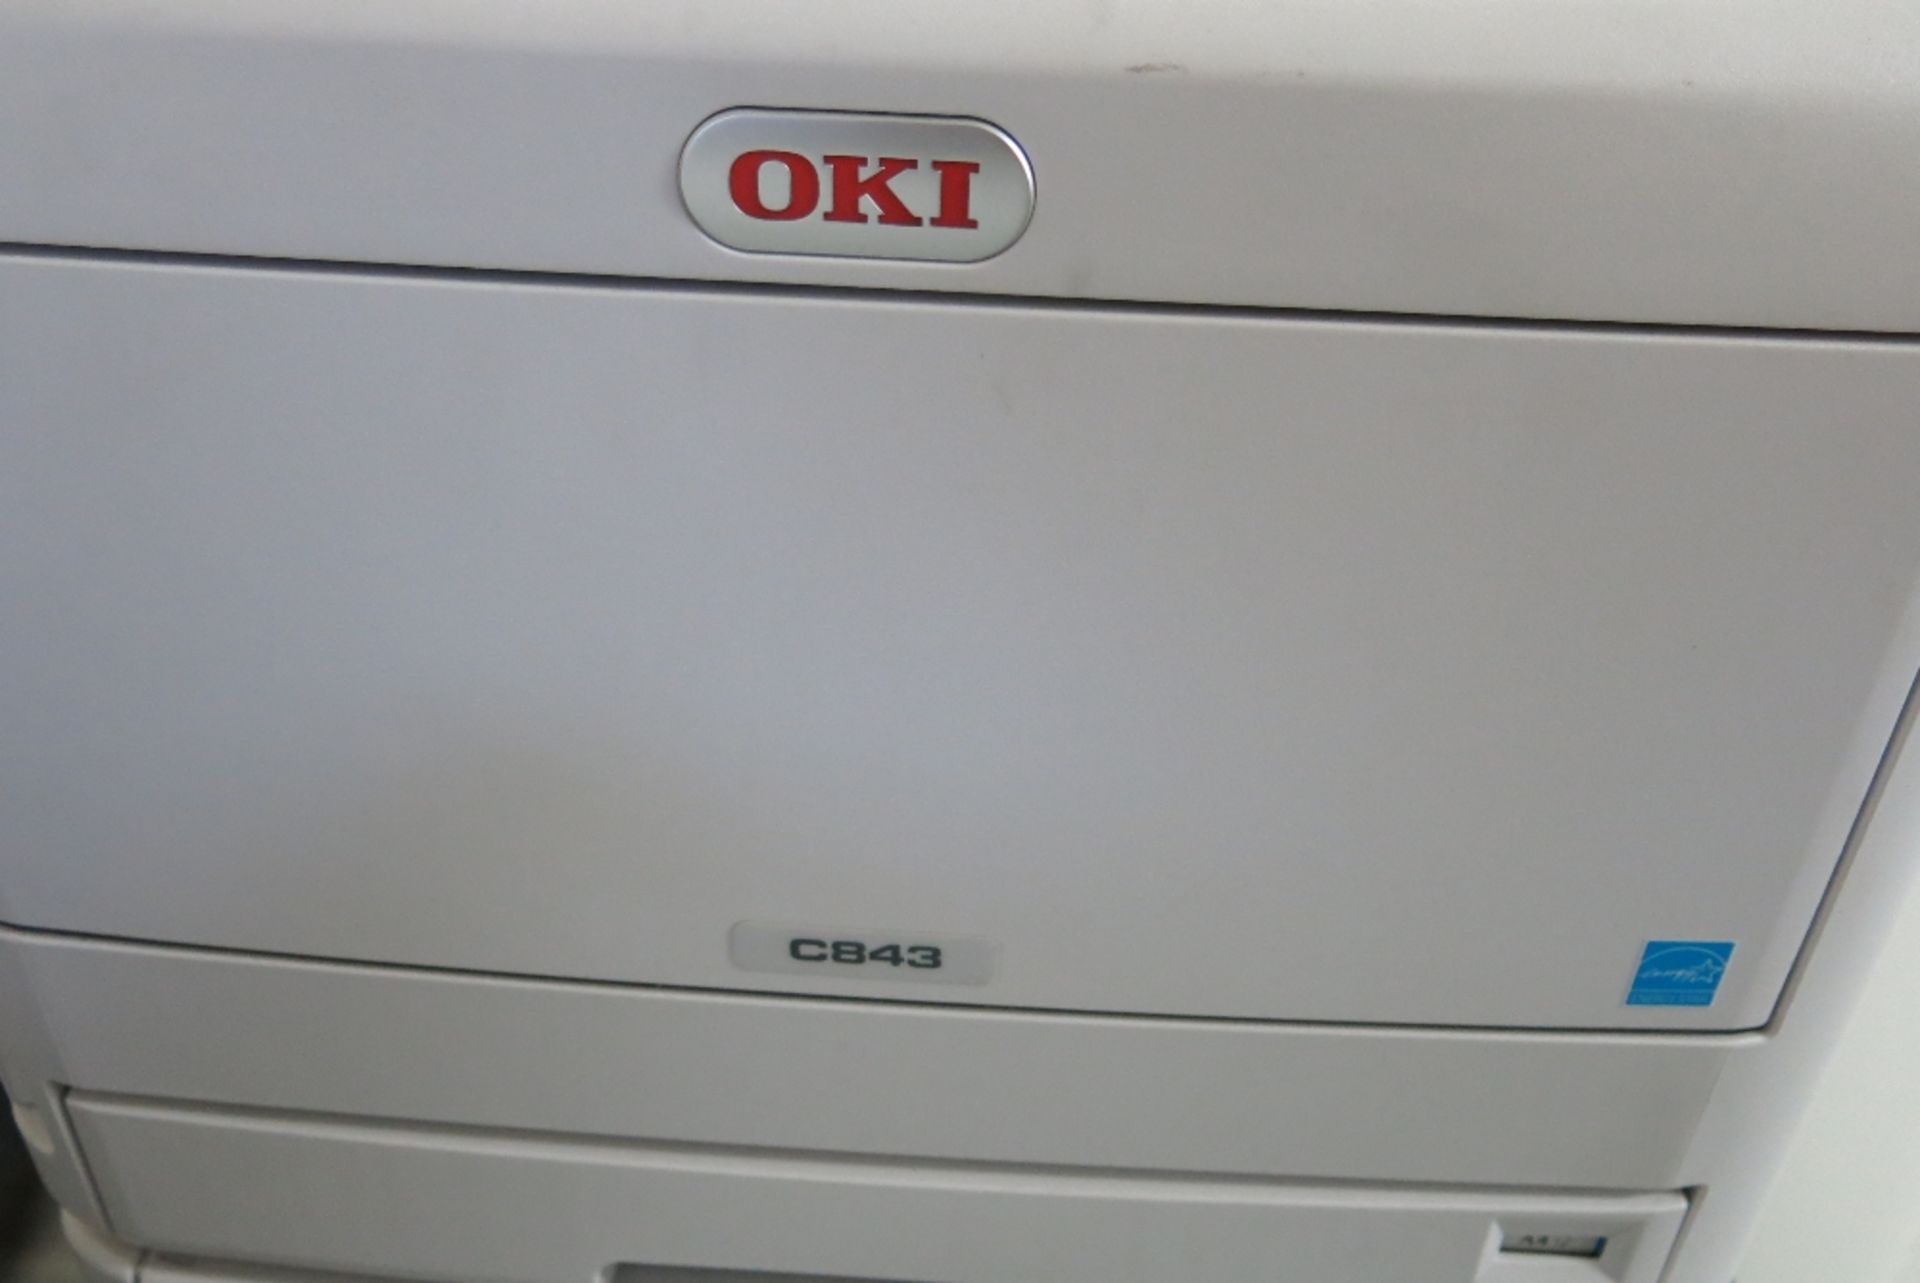 OKI C843 laser printer - Bild 2 aus 2